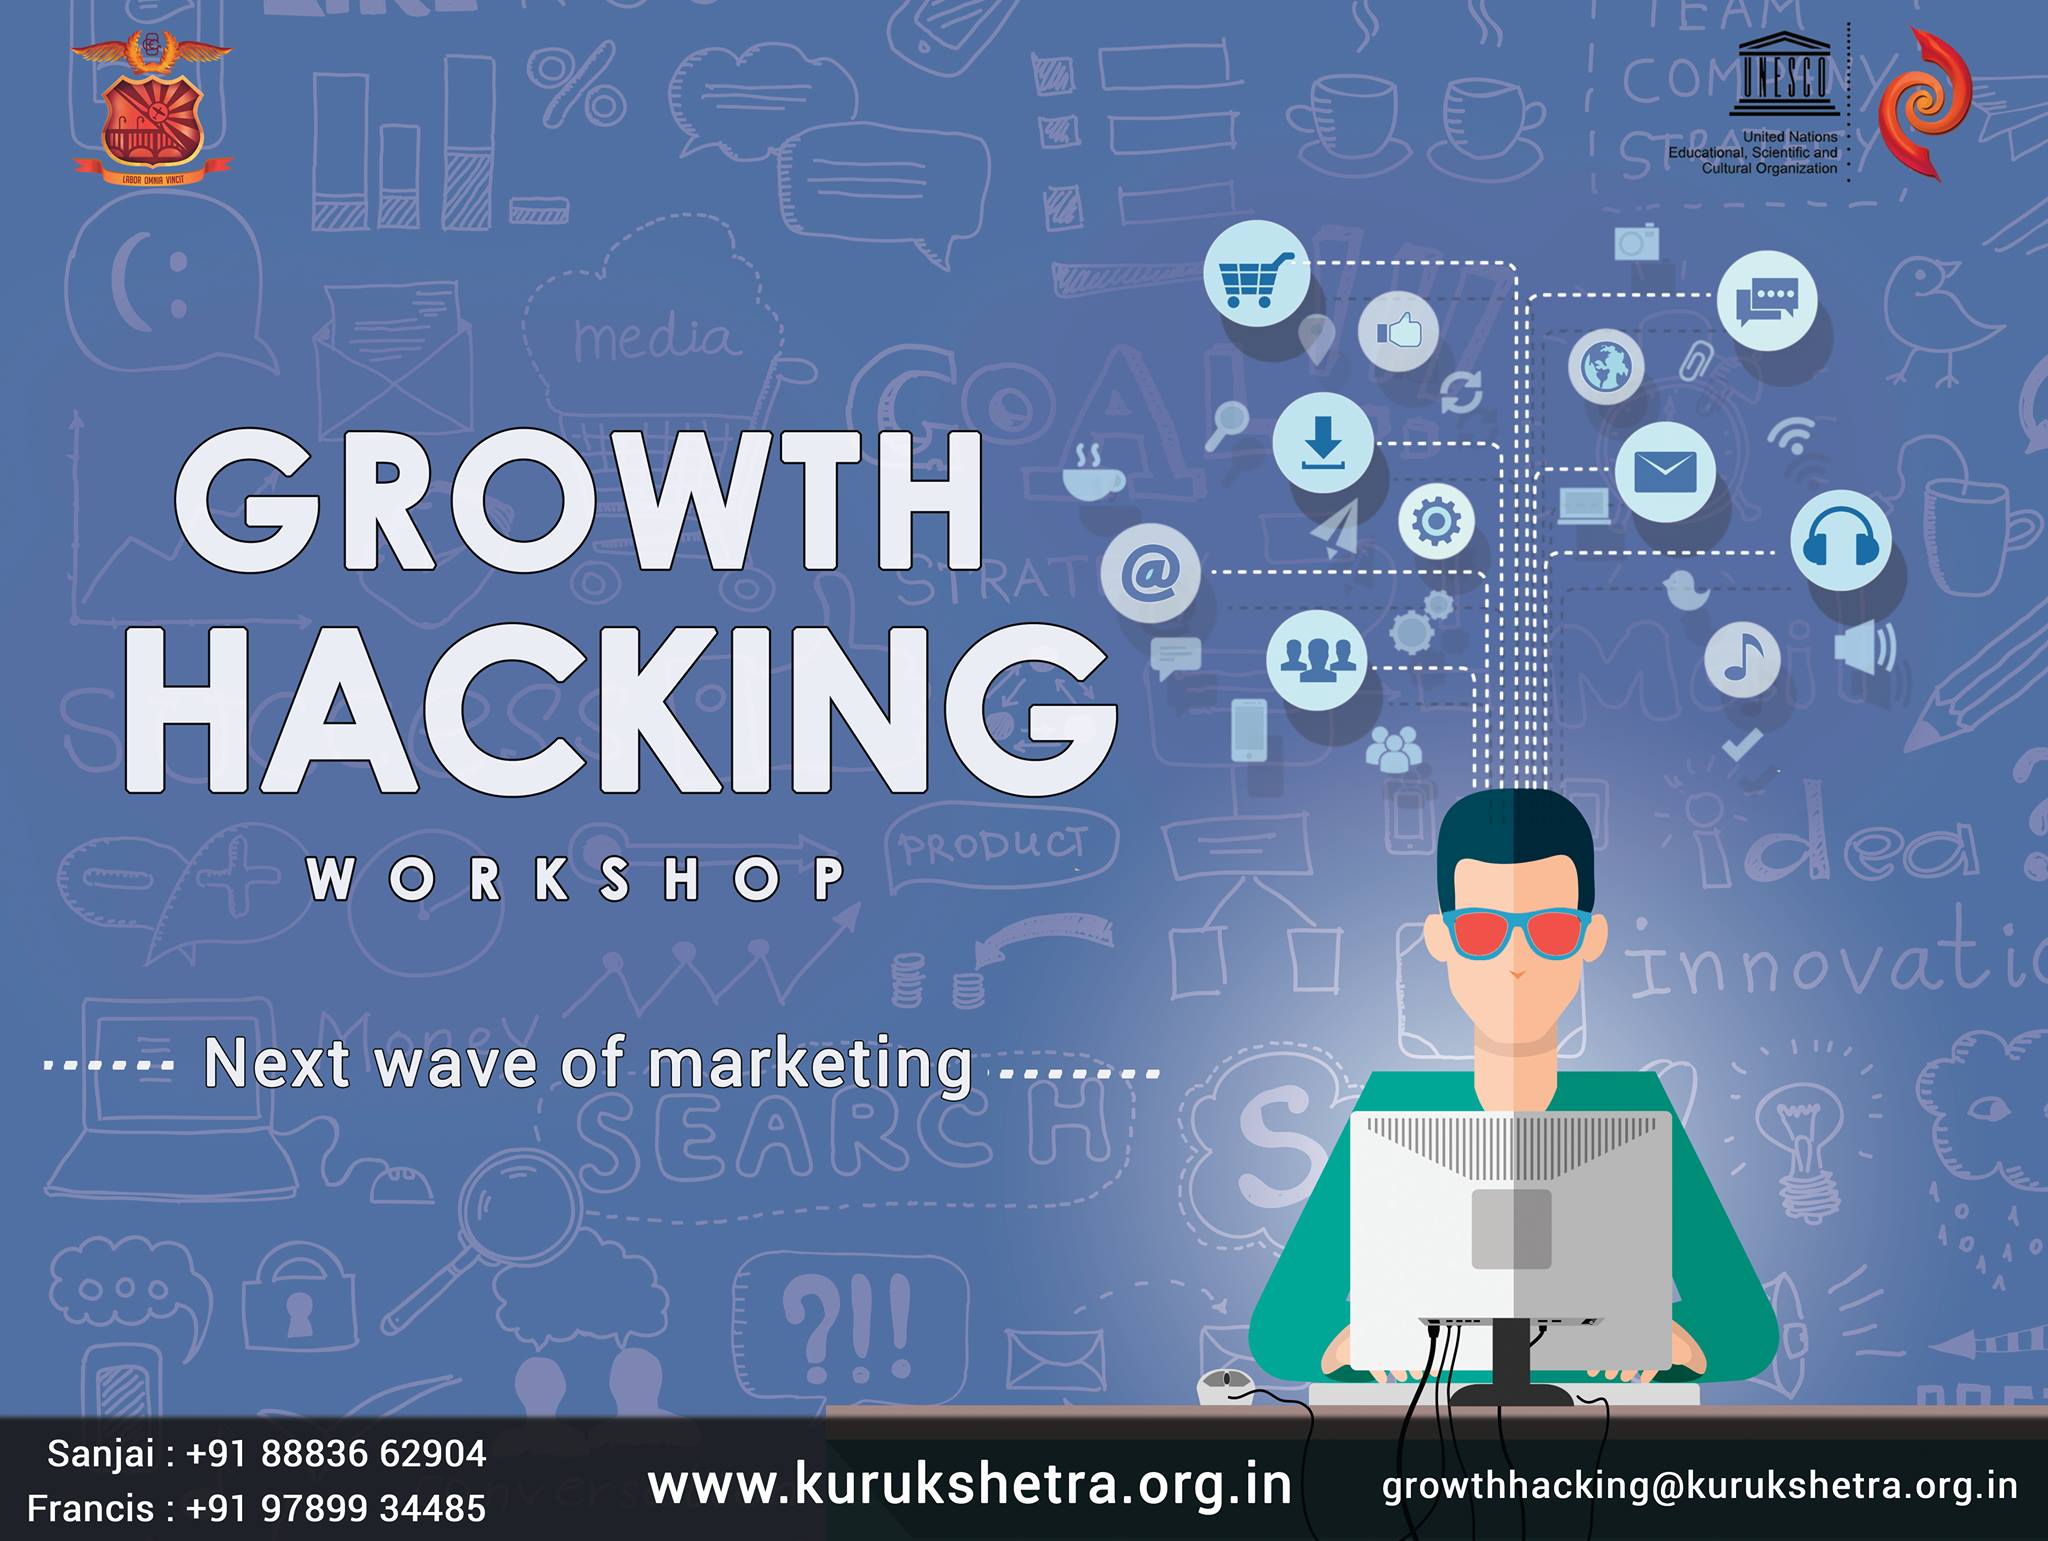 Growth Hacking workshop at Kurukshetra, CEG, Chennai, Tamil Nadu, India